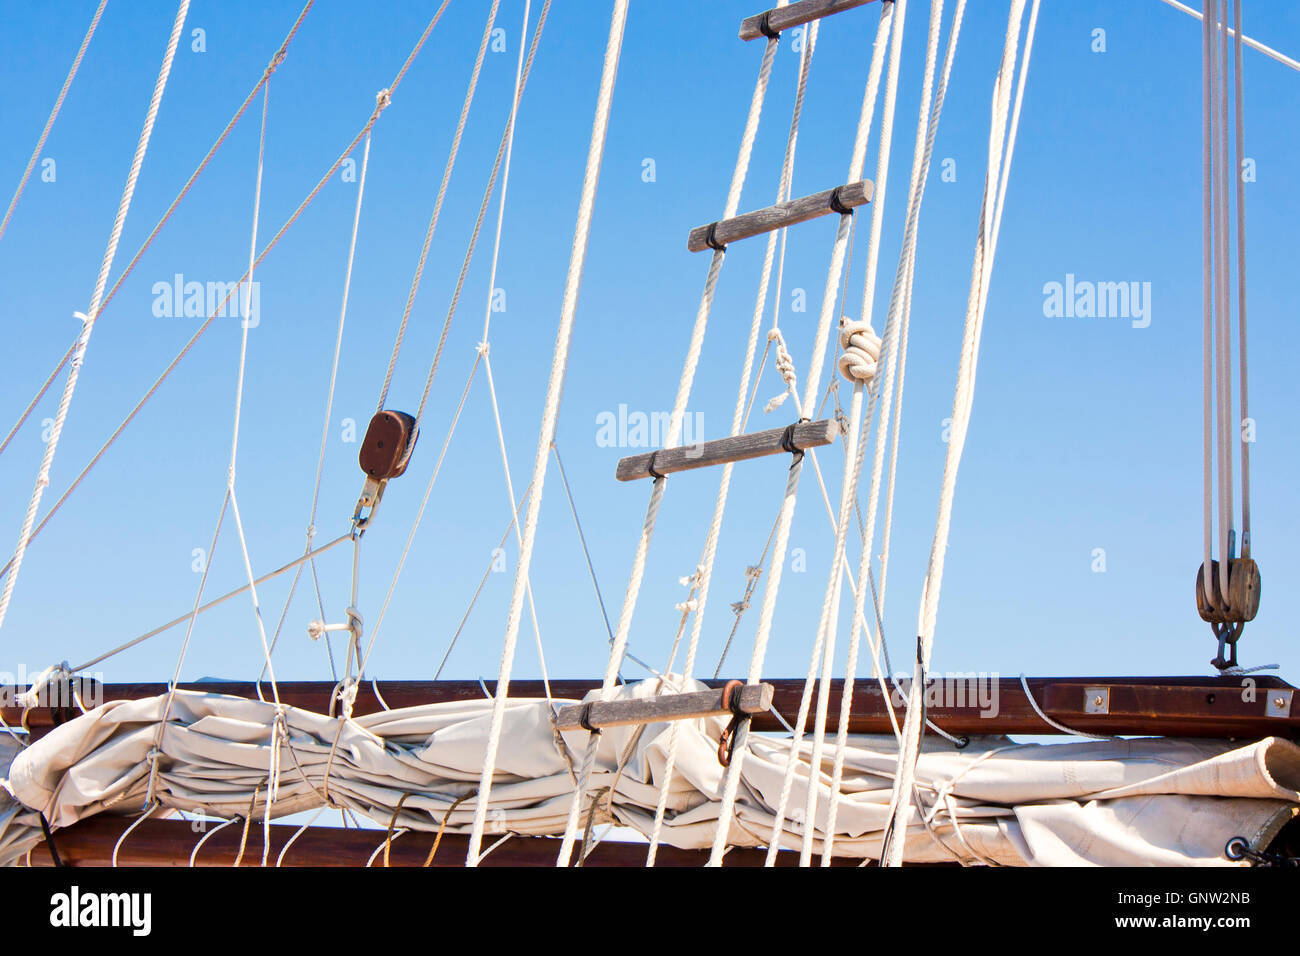 Detalle de un viejo velero envuelto navegar, pluma, jarcia y escalera de cuerda contra el cielo azul Foto de stock